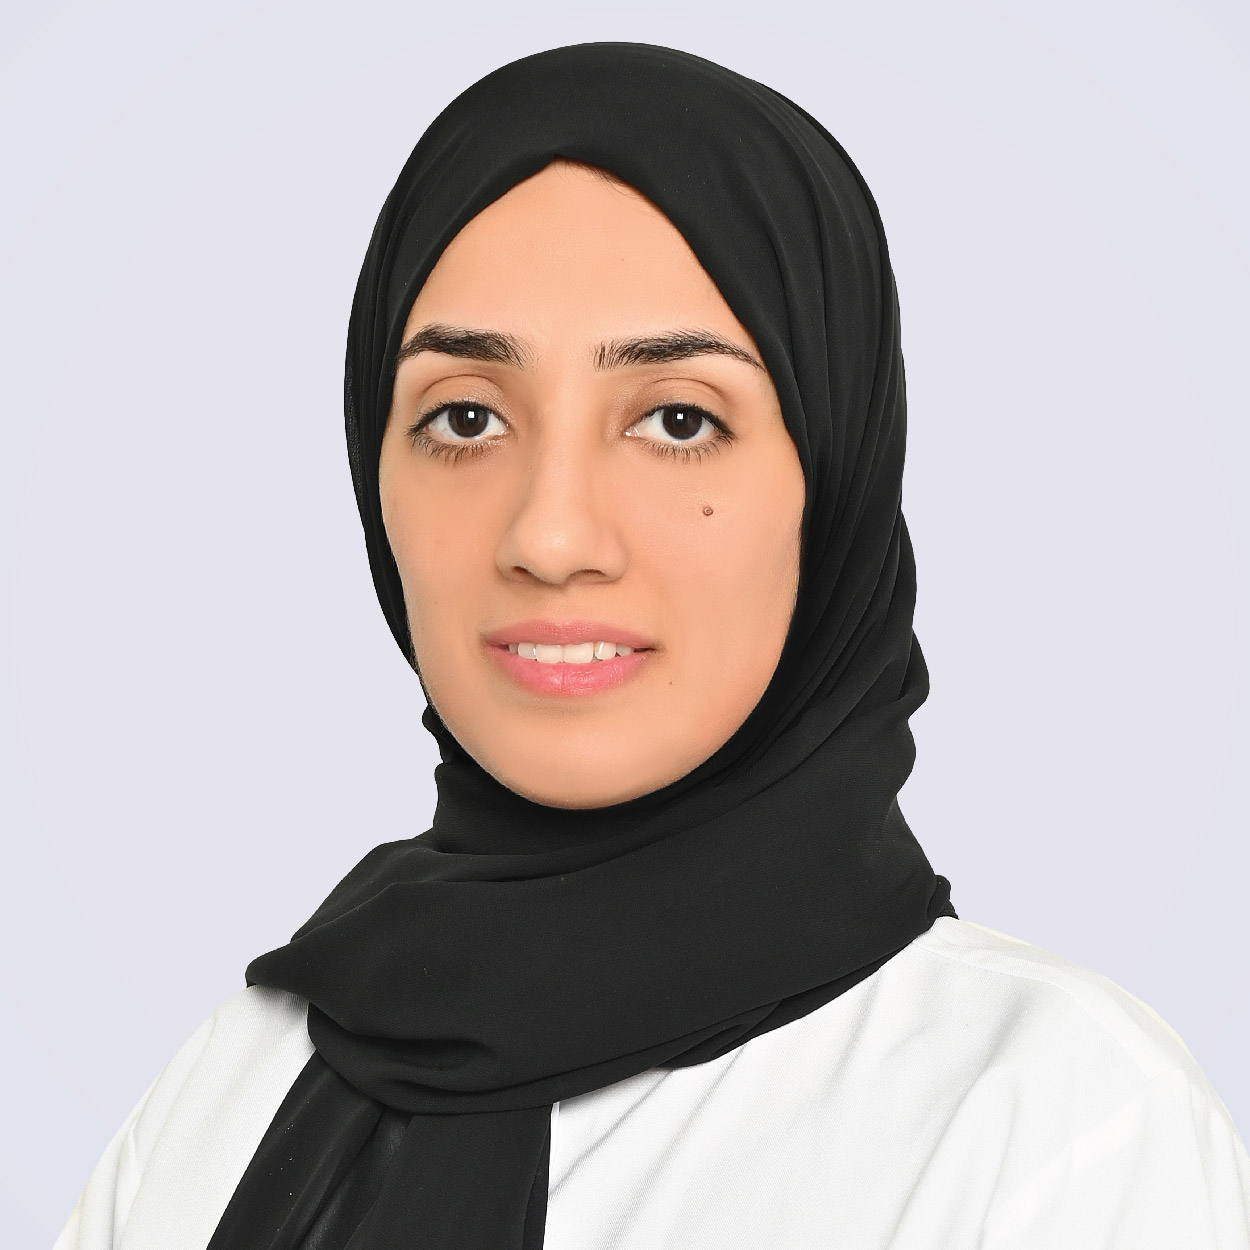 Dr. Fatemeh Ali